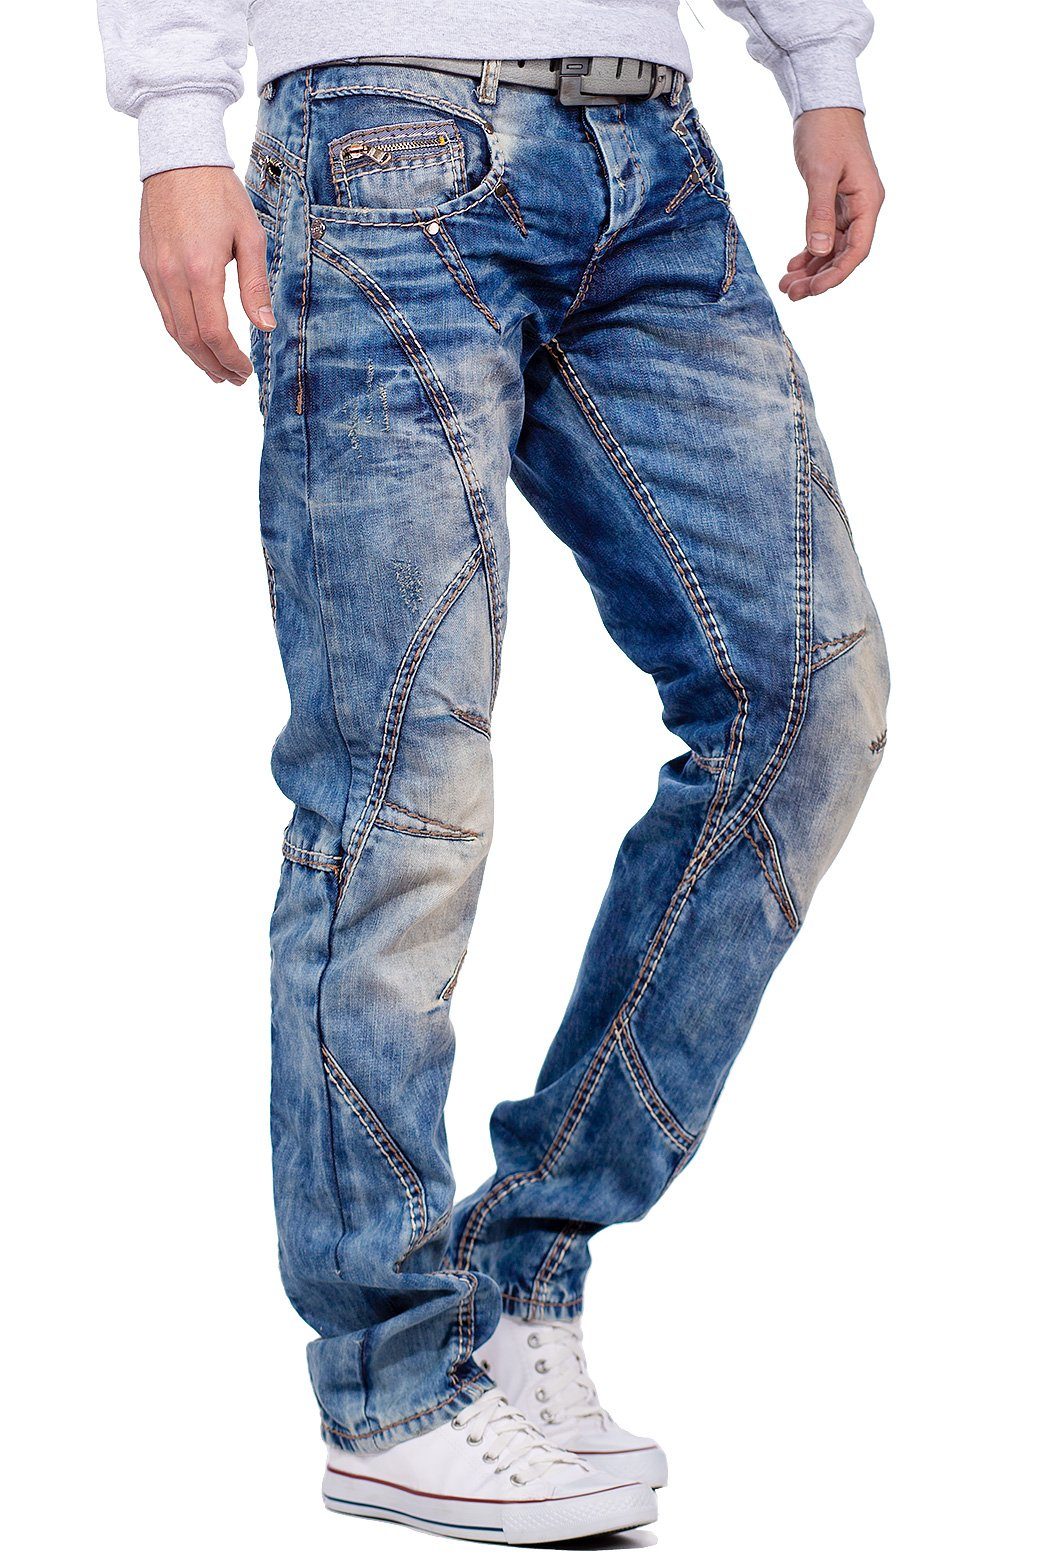 & Hose 5-Pocket-Jeans Baxx Verzierungen Nähten und BA-C0894 dicken Cipo mit